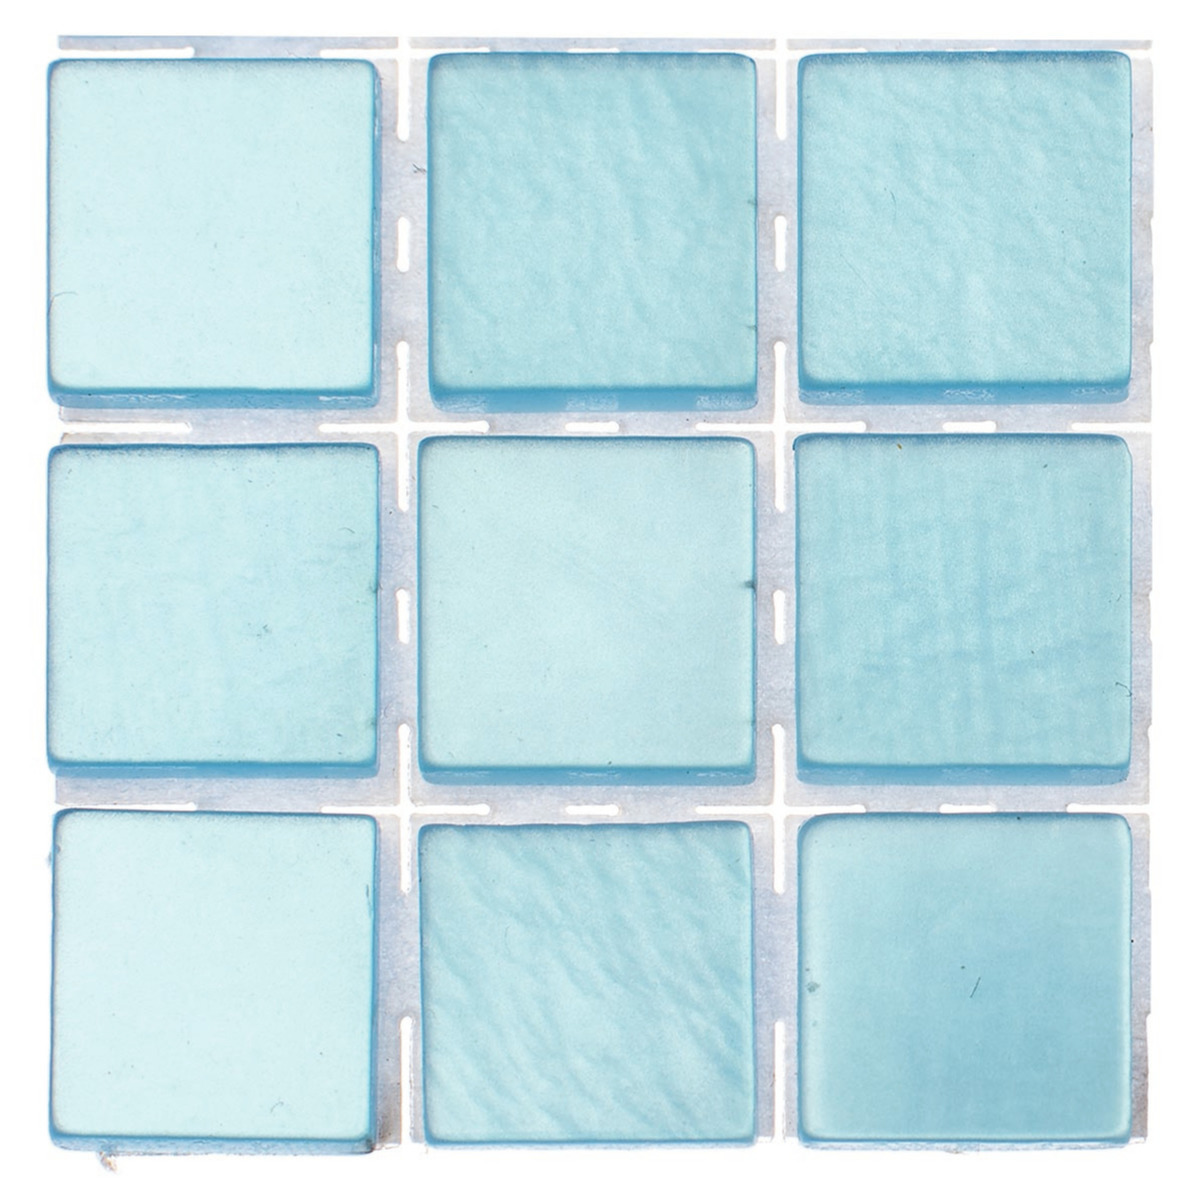 504x stuks mozaieken maken steentjes/tegels kleur lichtblauw 10 x 10 x 2 mm -